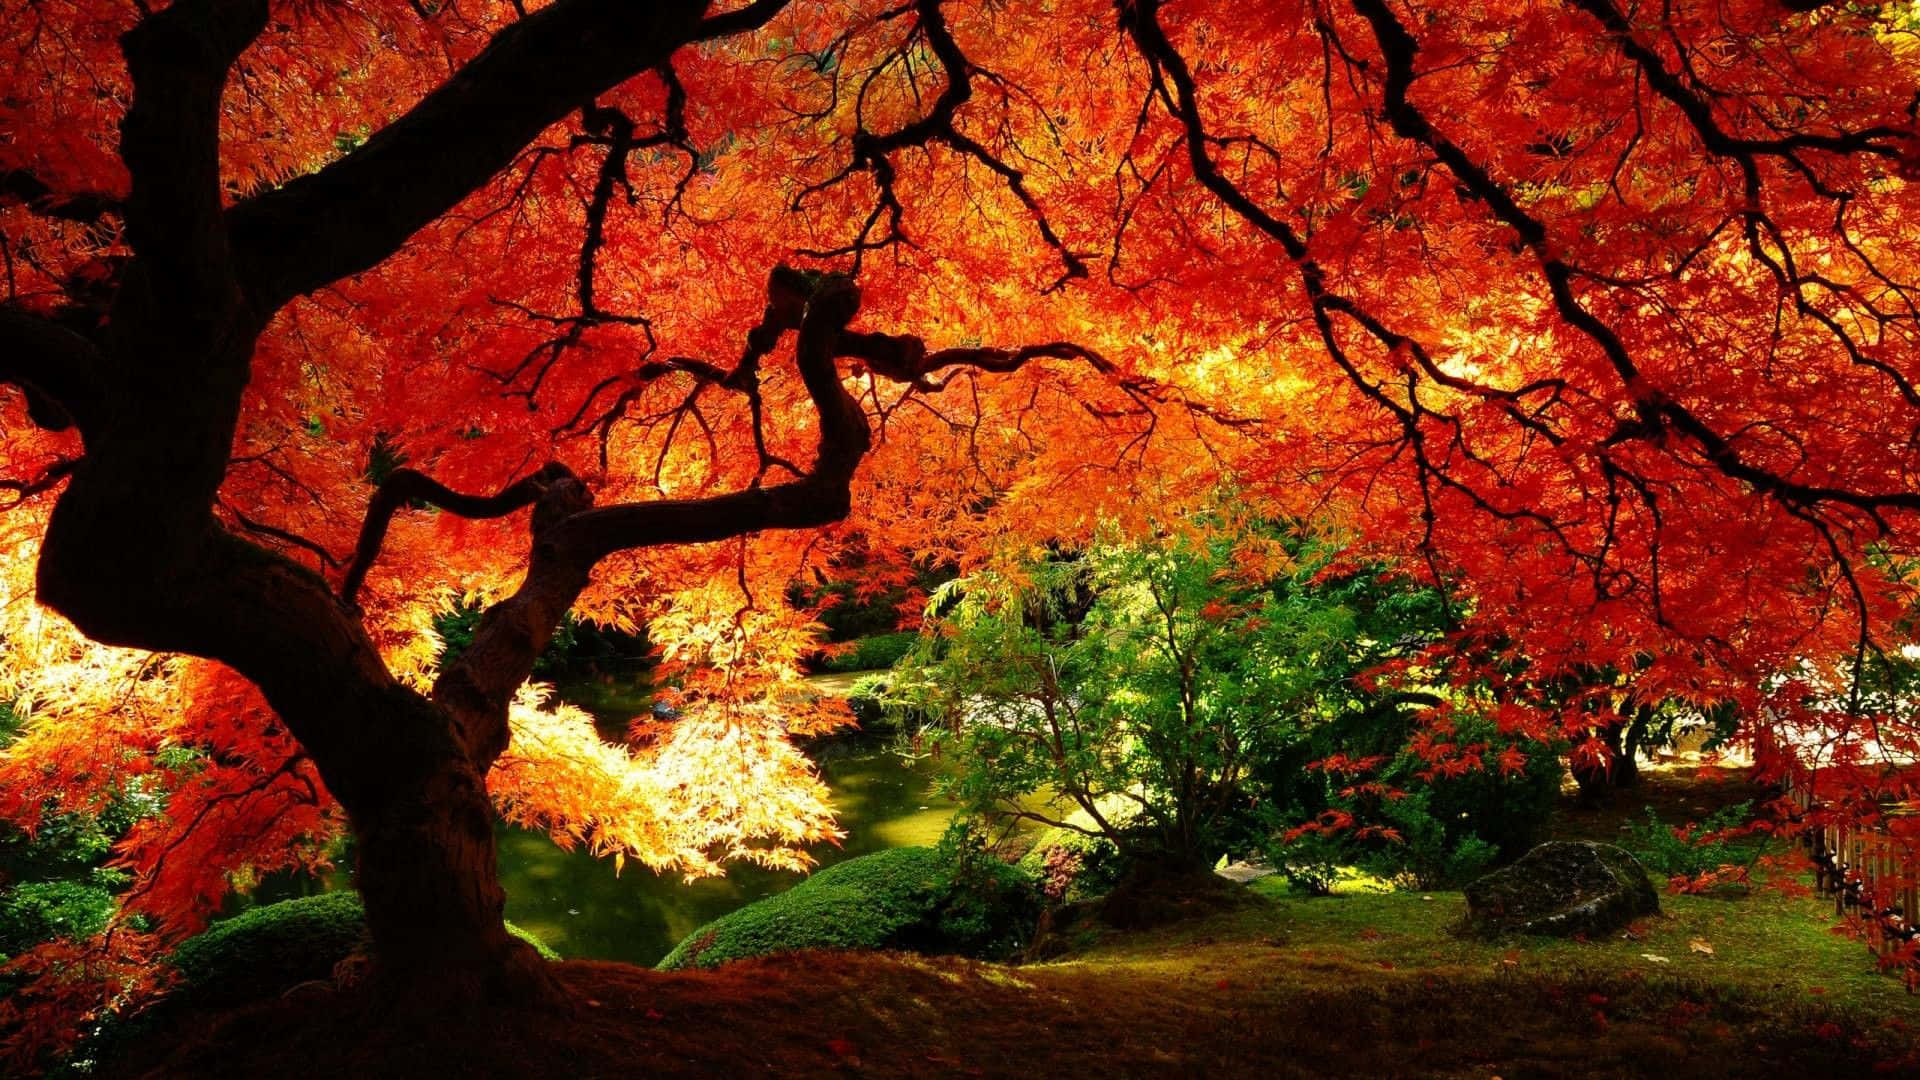 Caption: Tranquil Autumn Landscape Wallpaper